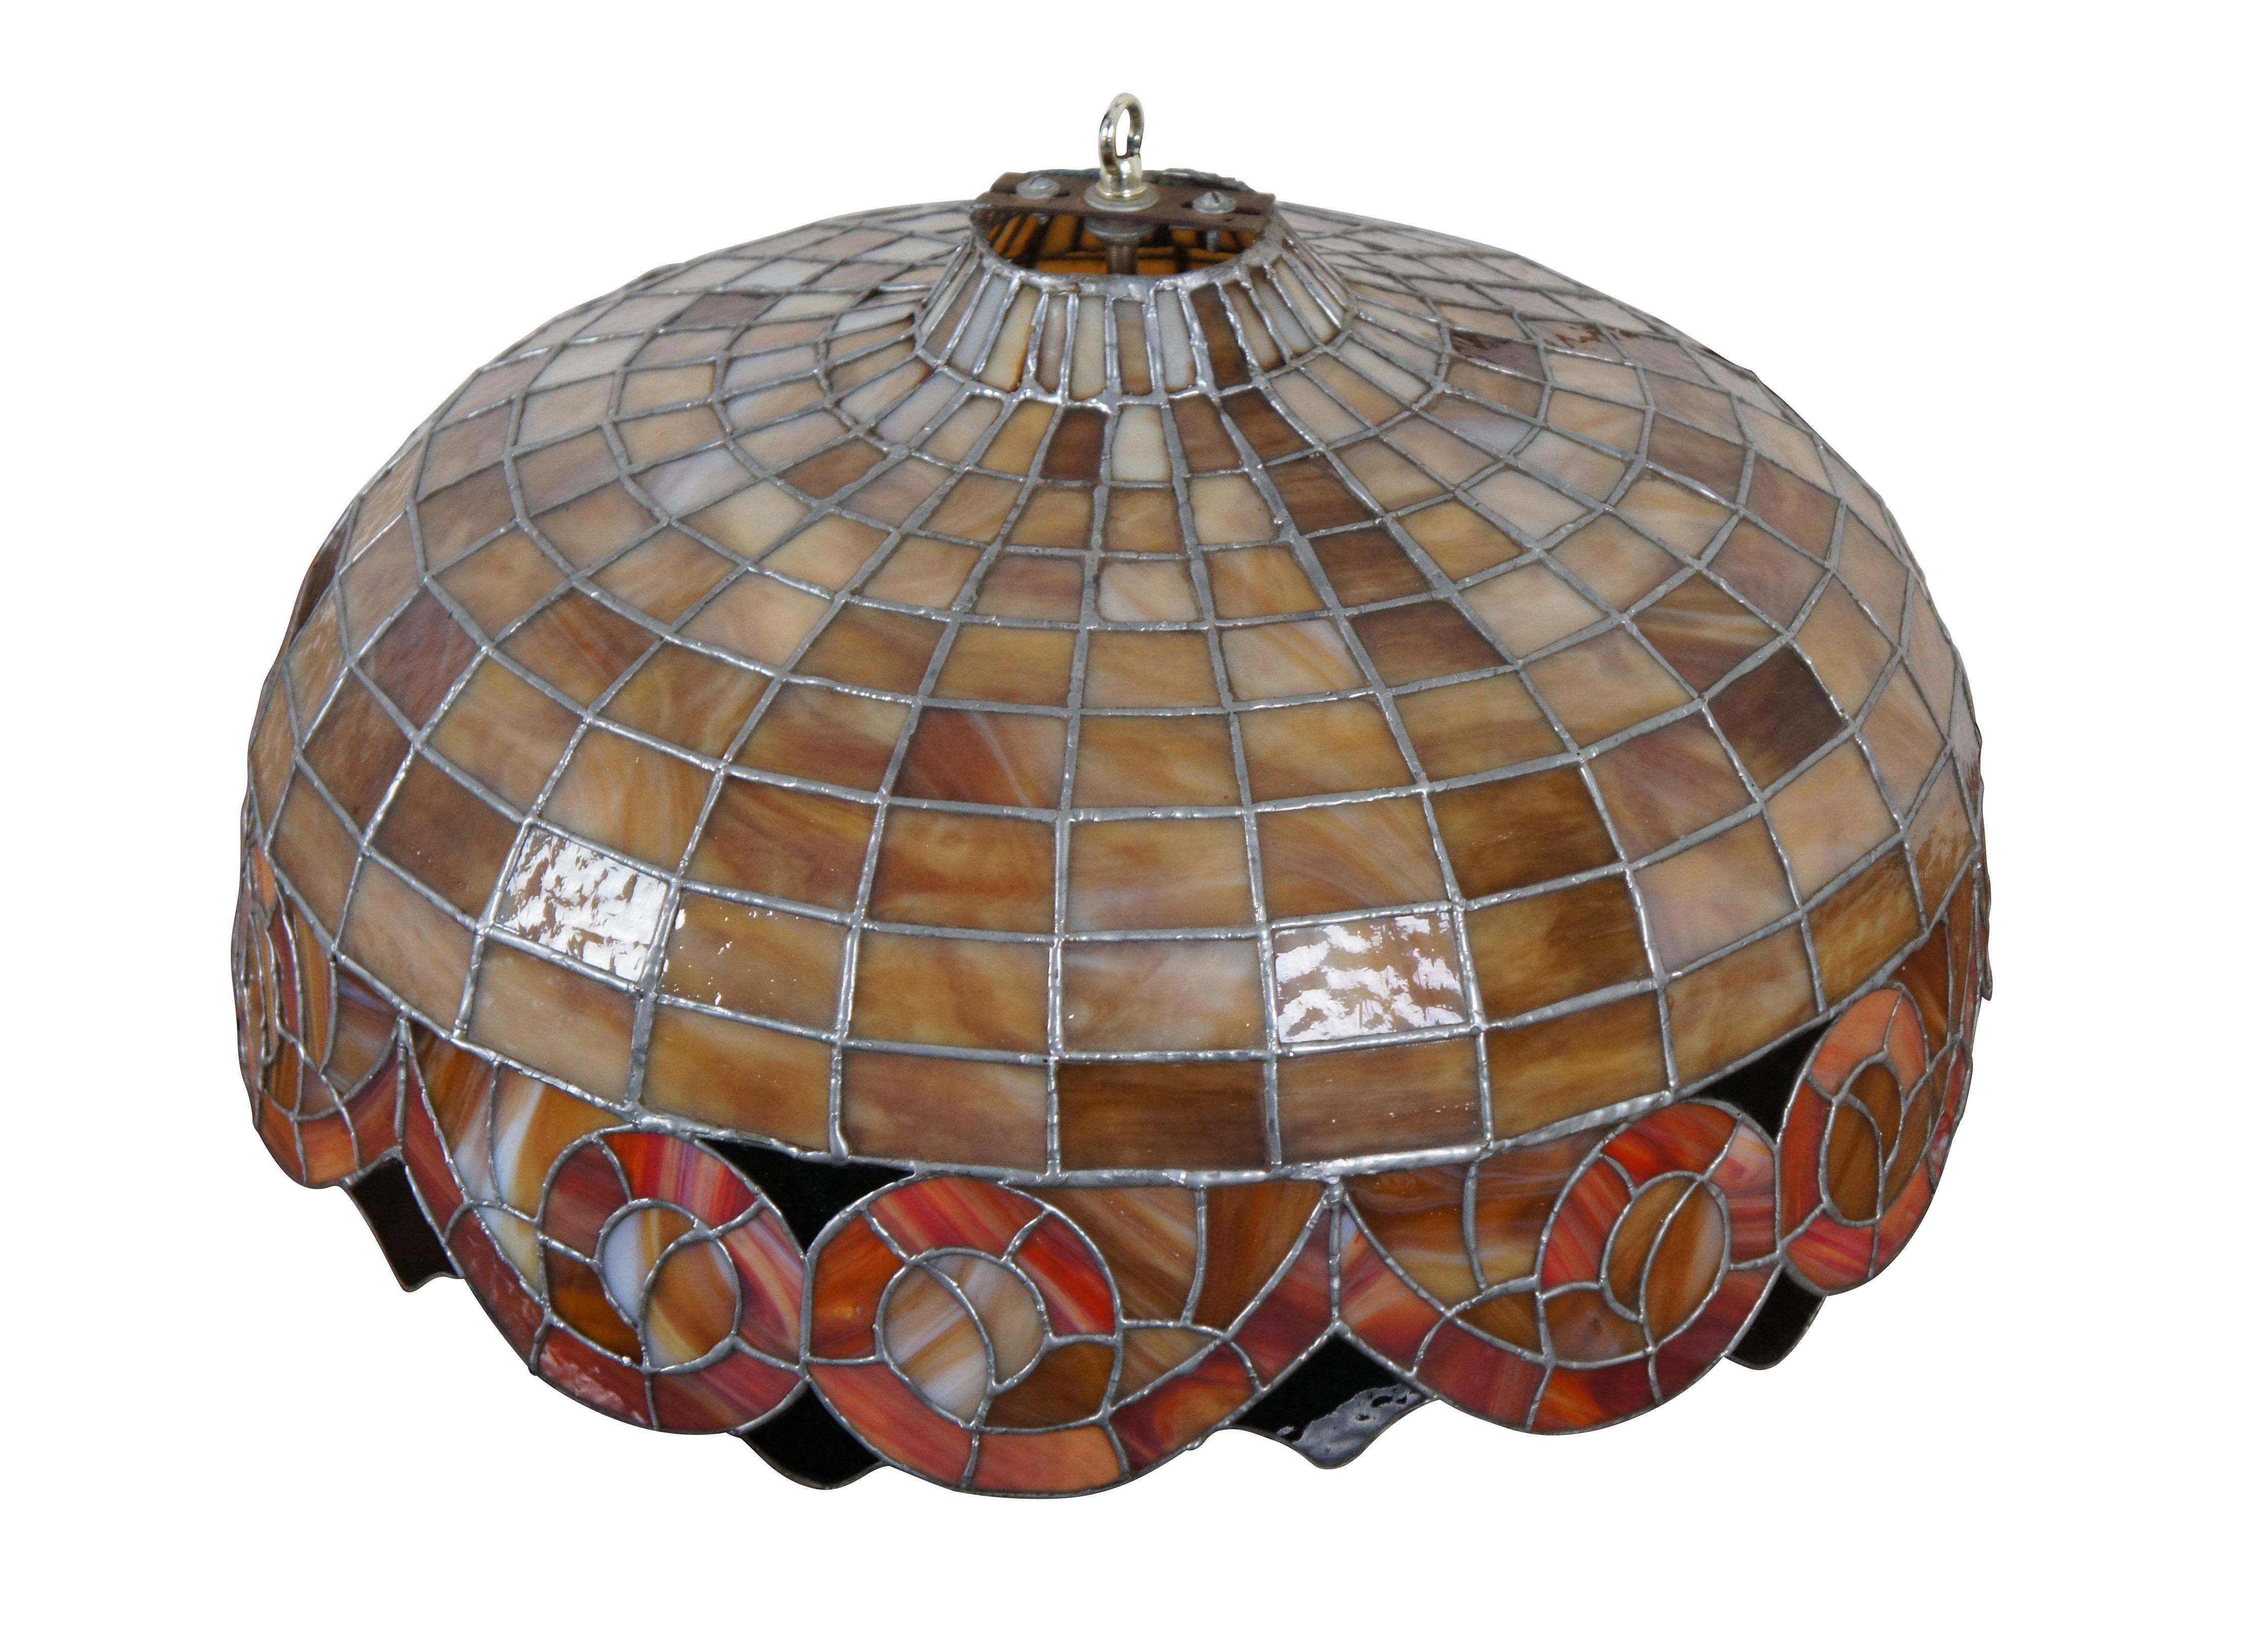 Ein großer und beeindruckender Vintage-Kronleuchter im Tiffany-Stil mit einem Schirm aus gebeiztem Schlackenglas in gestapelten geometrischen und schlangenförmigen Mustern.

Abmessungen:
22